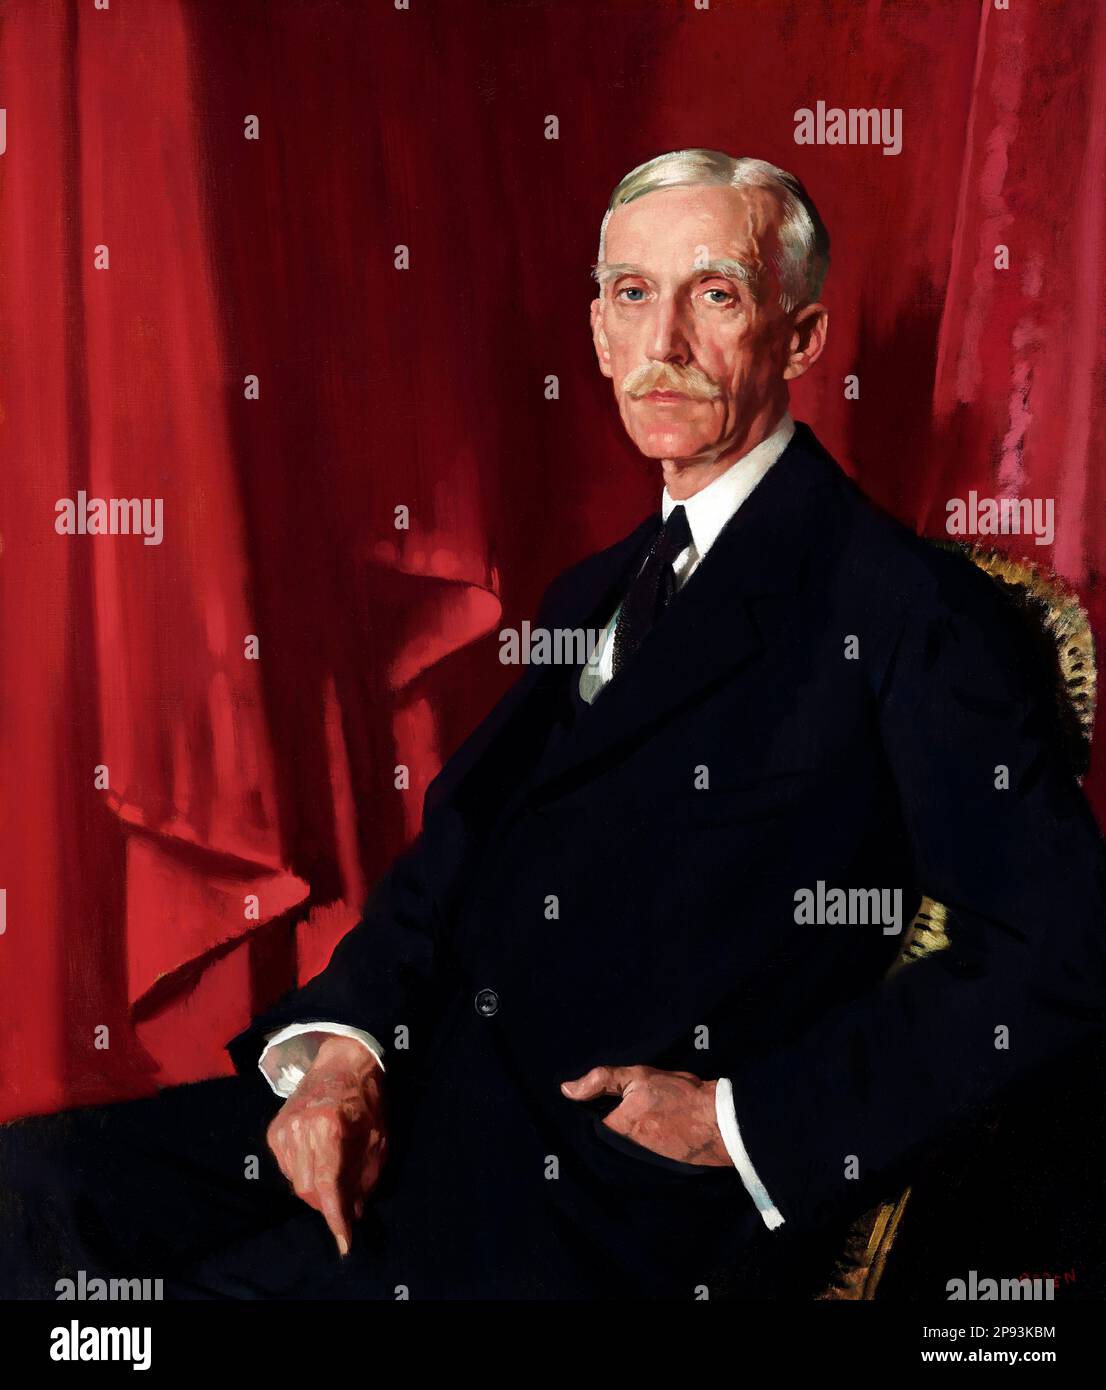 Andrew Mellon. Portrait du banquier et politicien américain, Andrew William Mellon (1855-1937) par William Orpen, huile sur toile, 1924 Banque D'Images